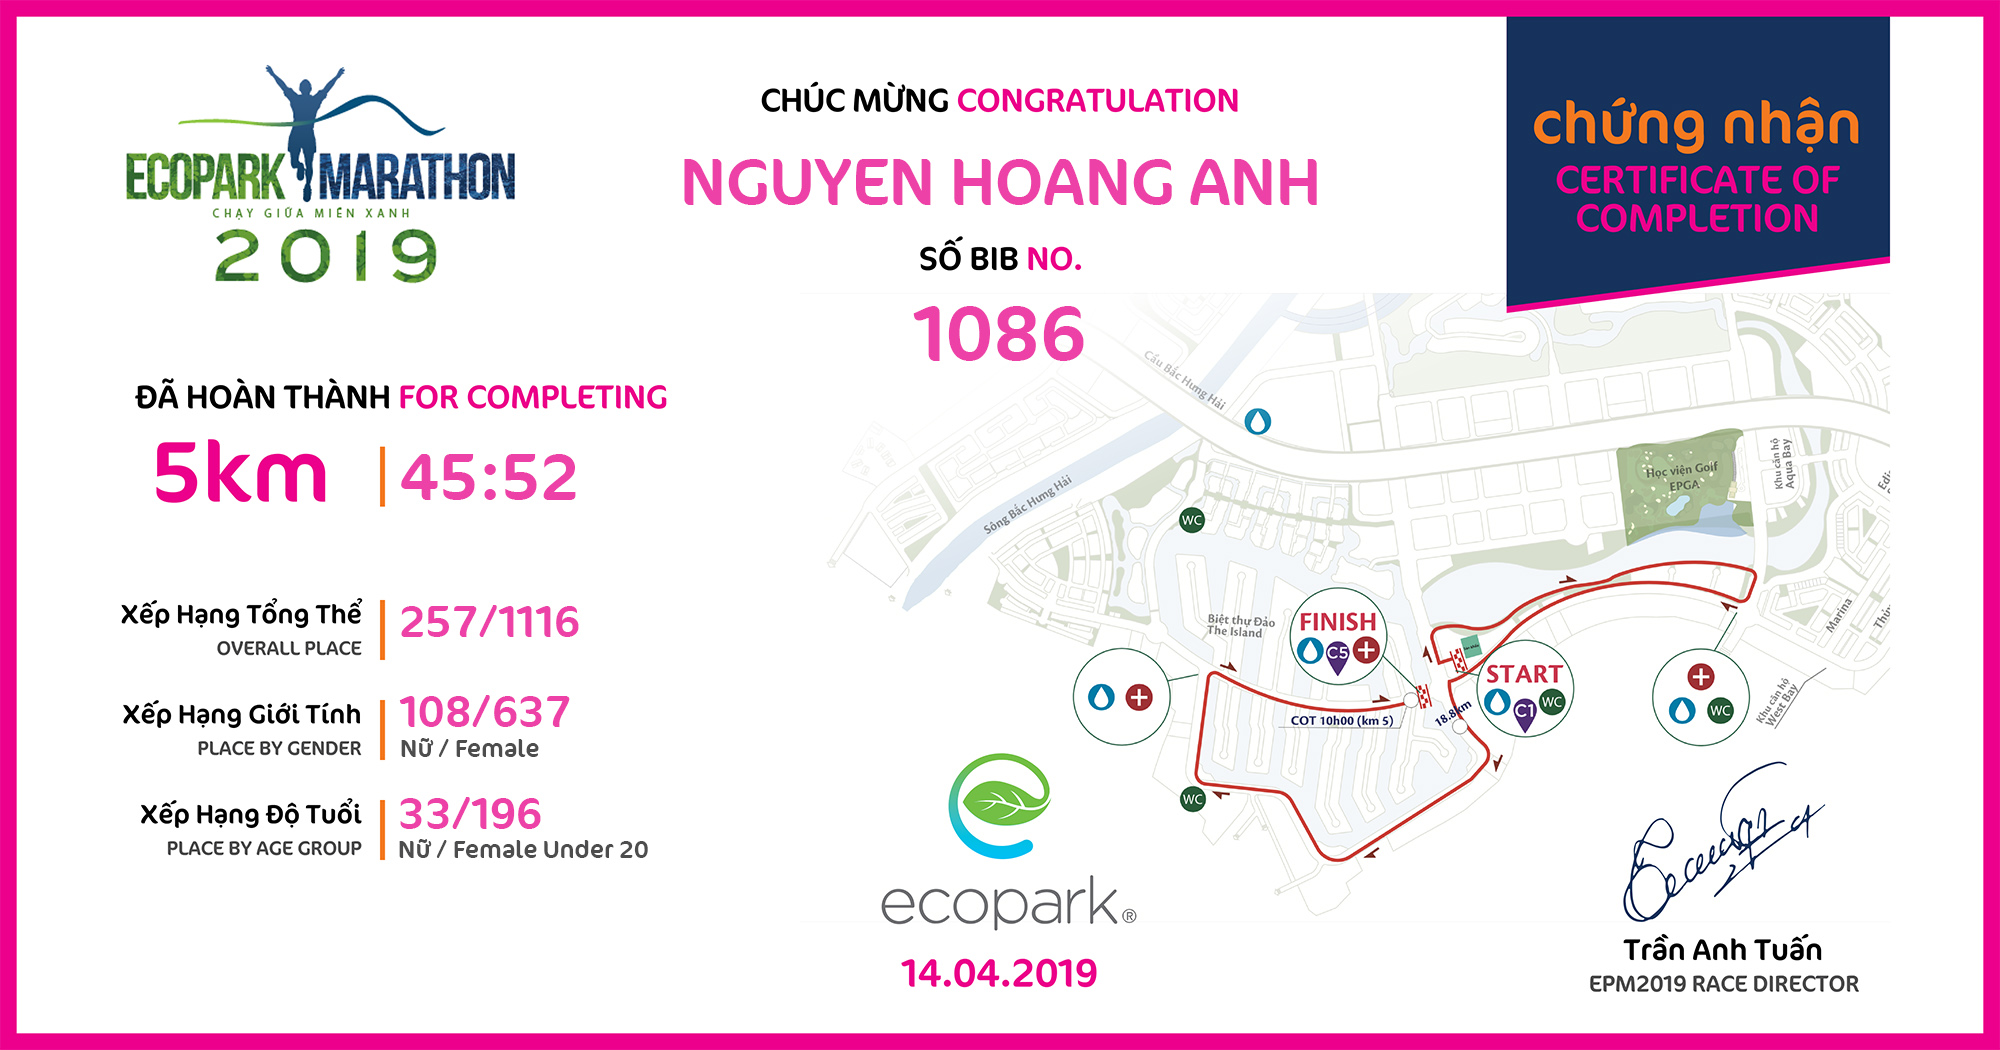 1086 - Nguyen Hoang Anh